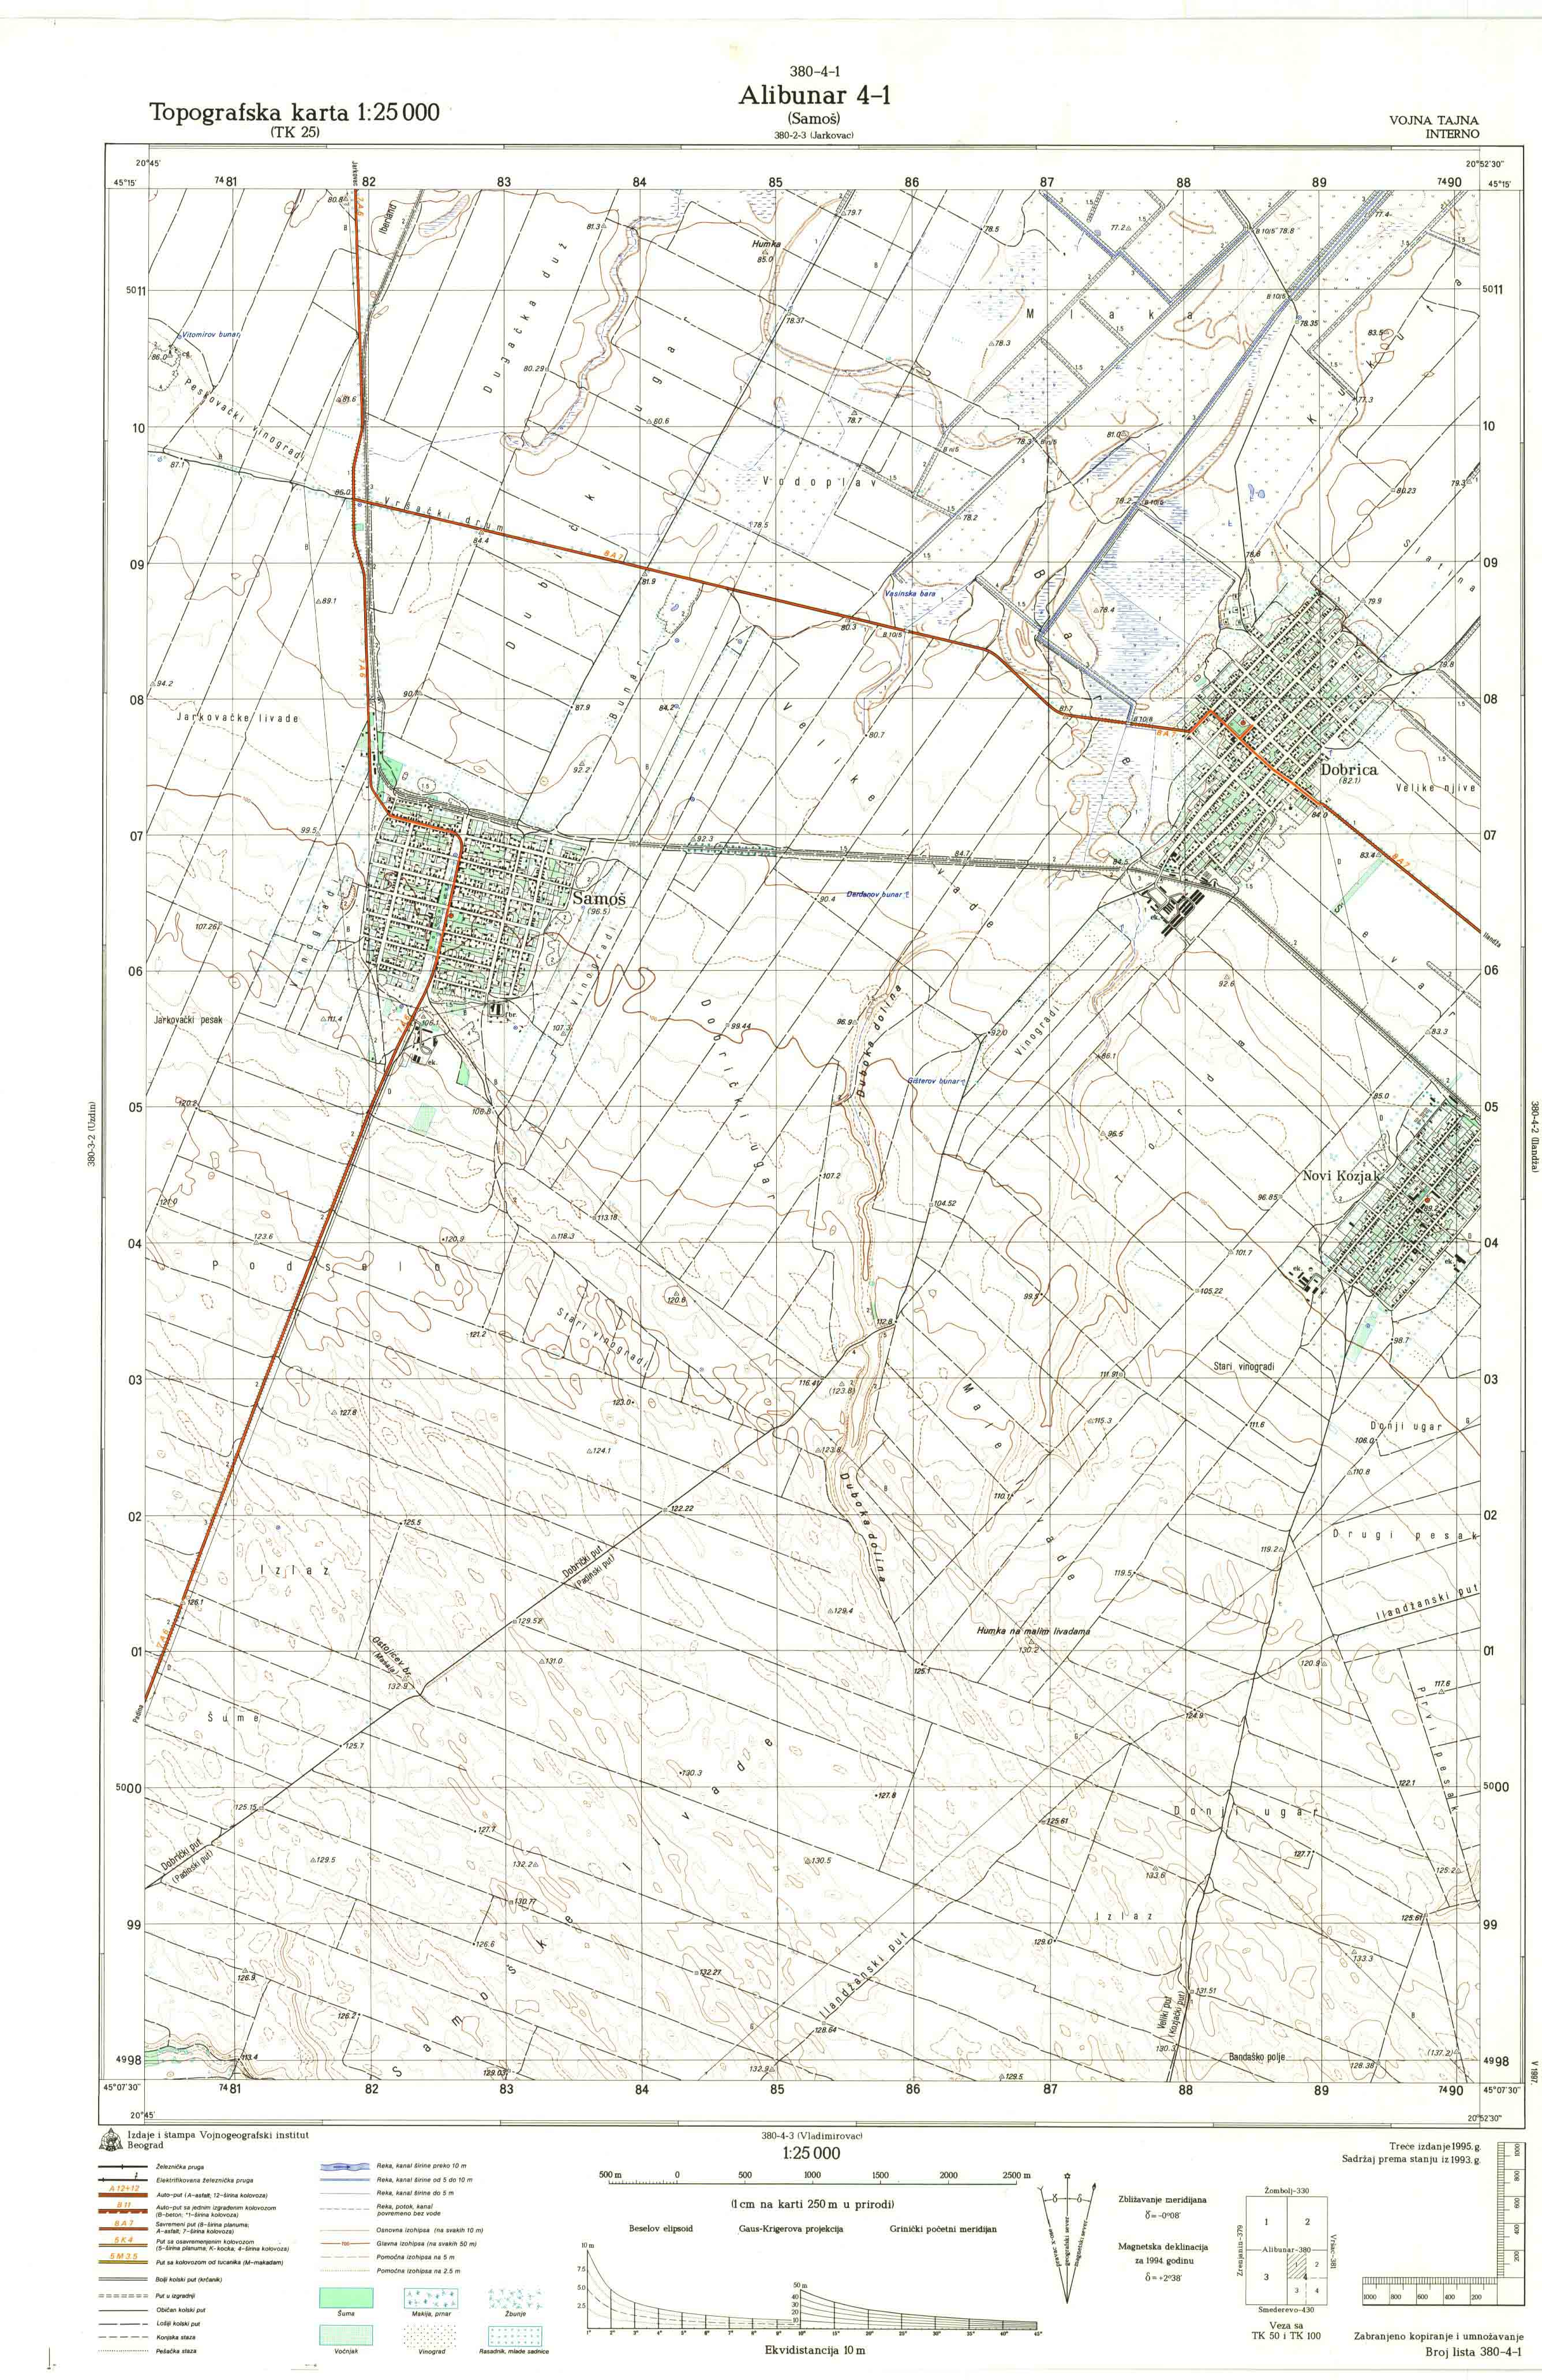  topografska karta srbije 25000 JNA  Alibunar